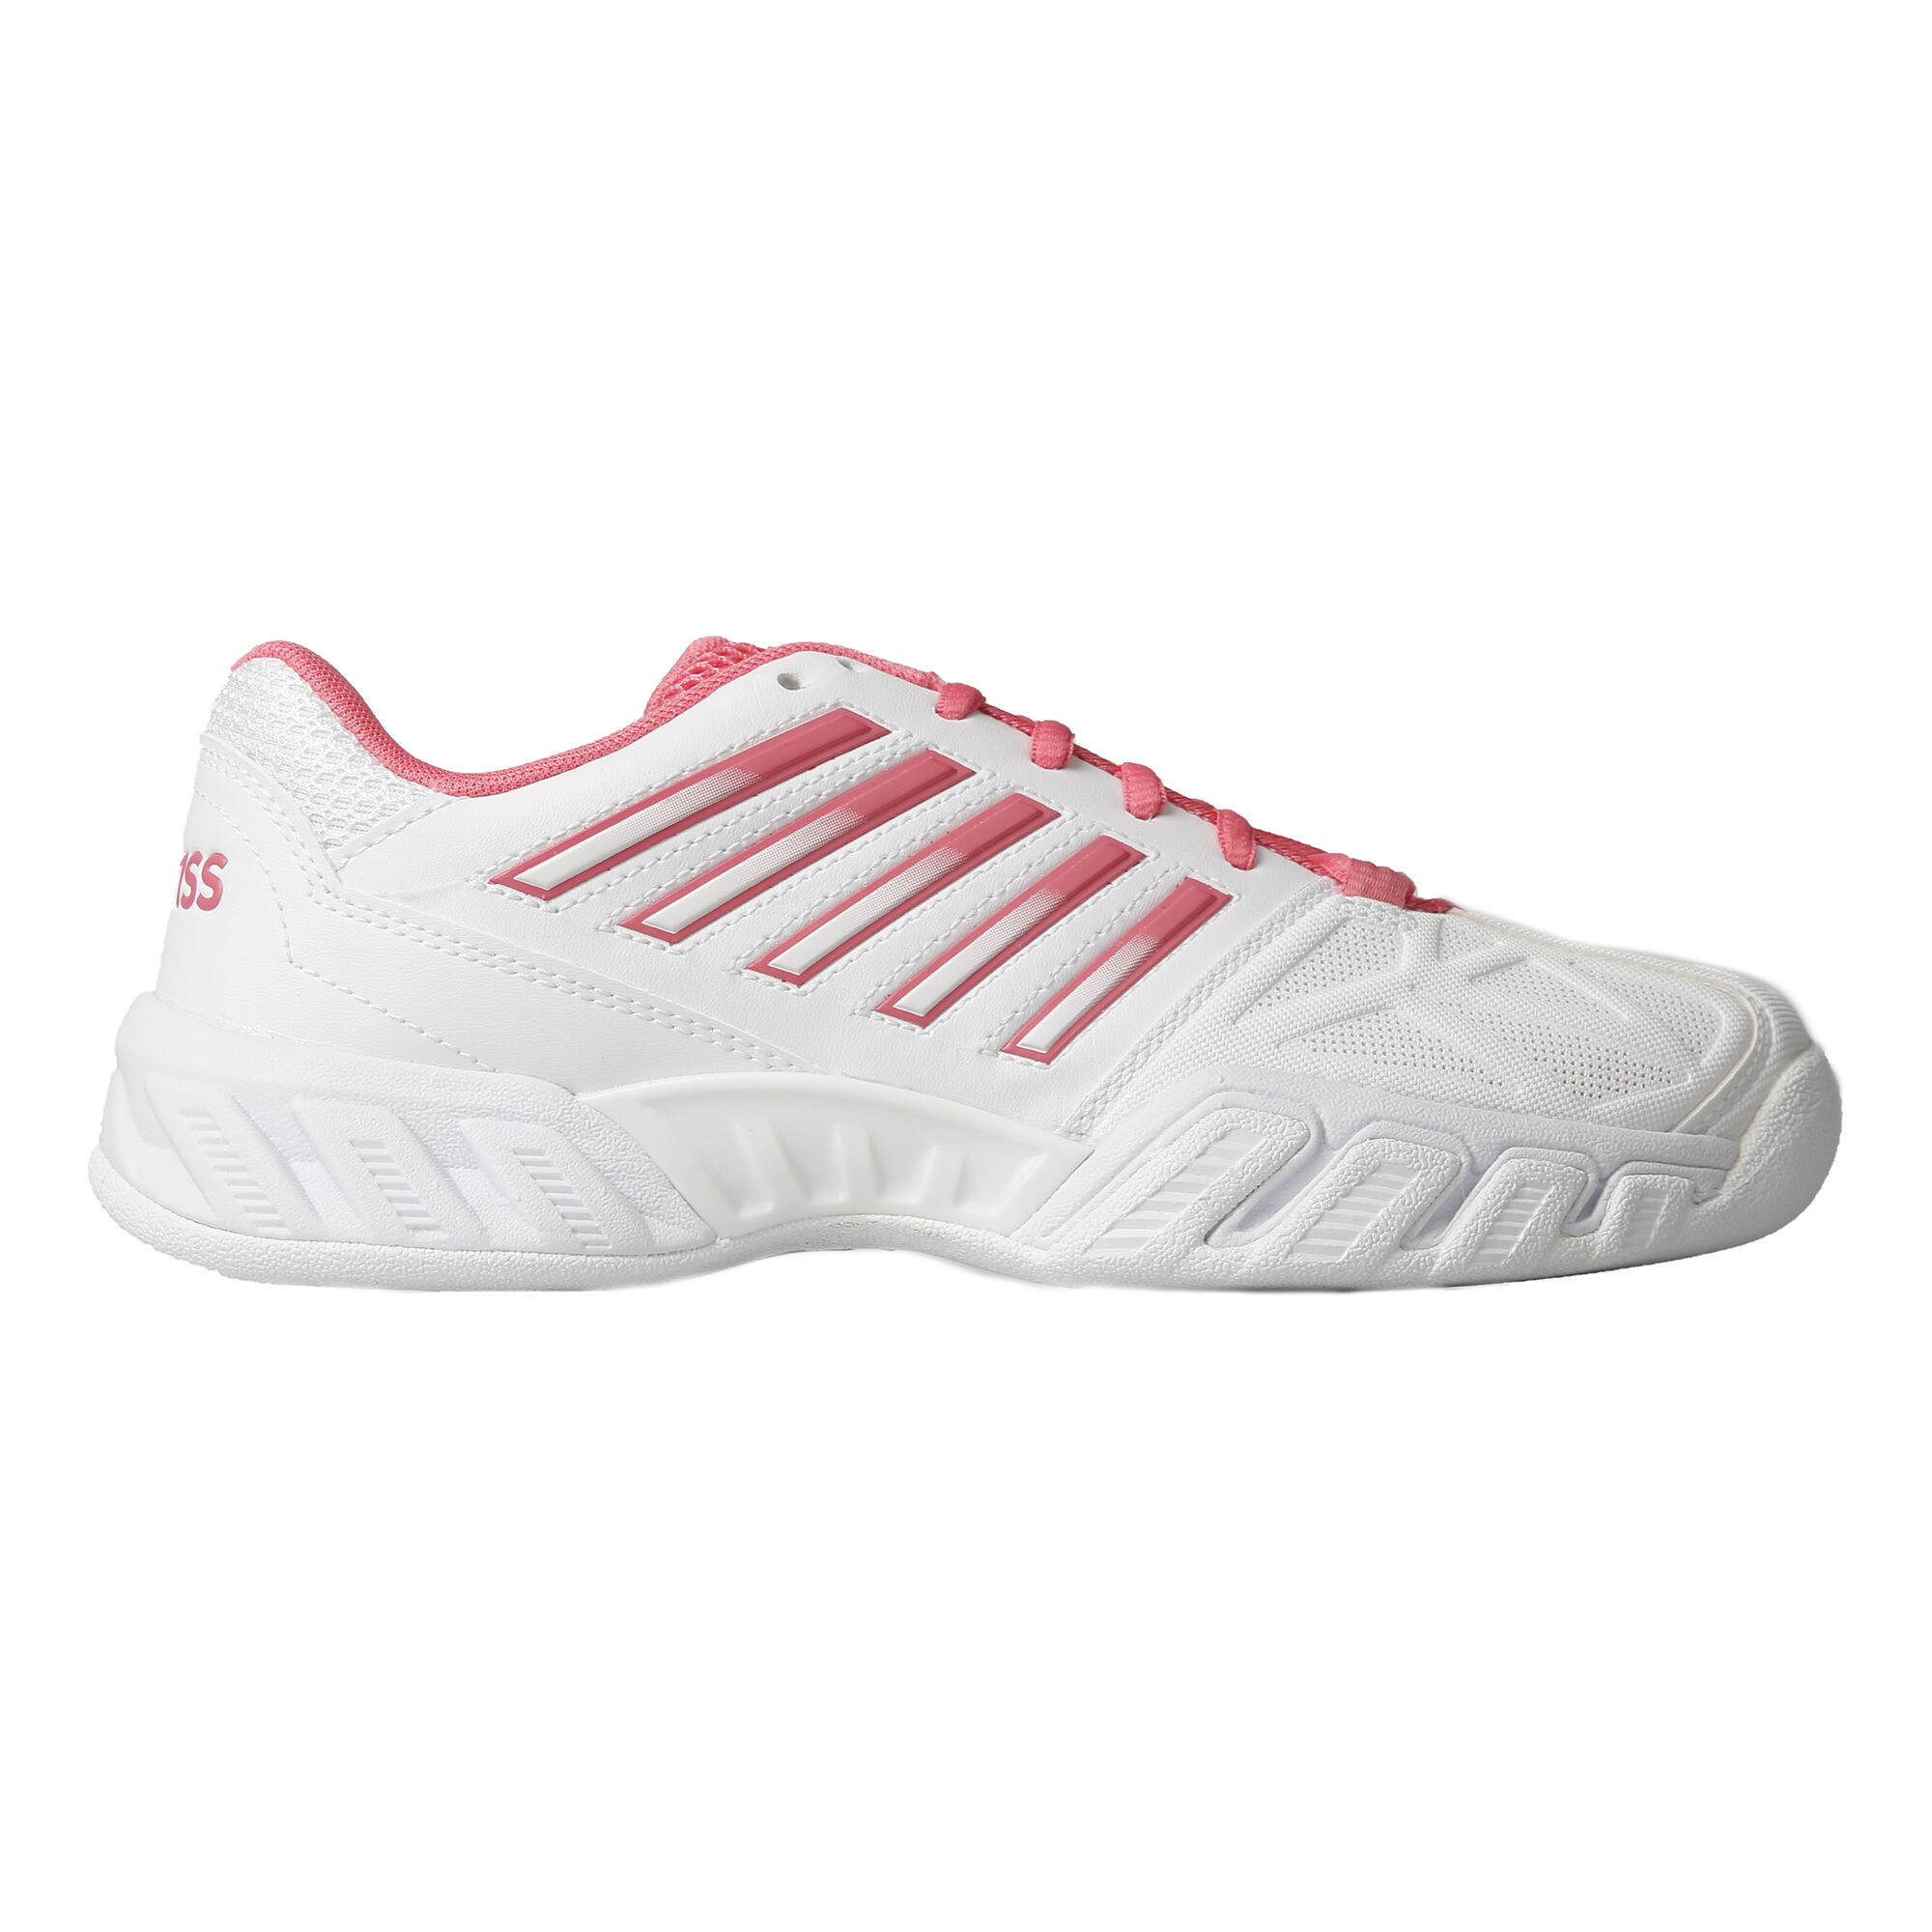 vloot voor het geval dat holte buy K-Swiss Big-Shot Light 3 Carpet Shoe Women - White, Pink online |  Tennis-Point